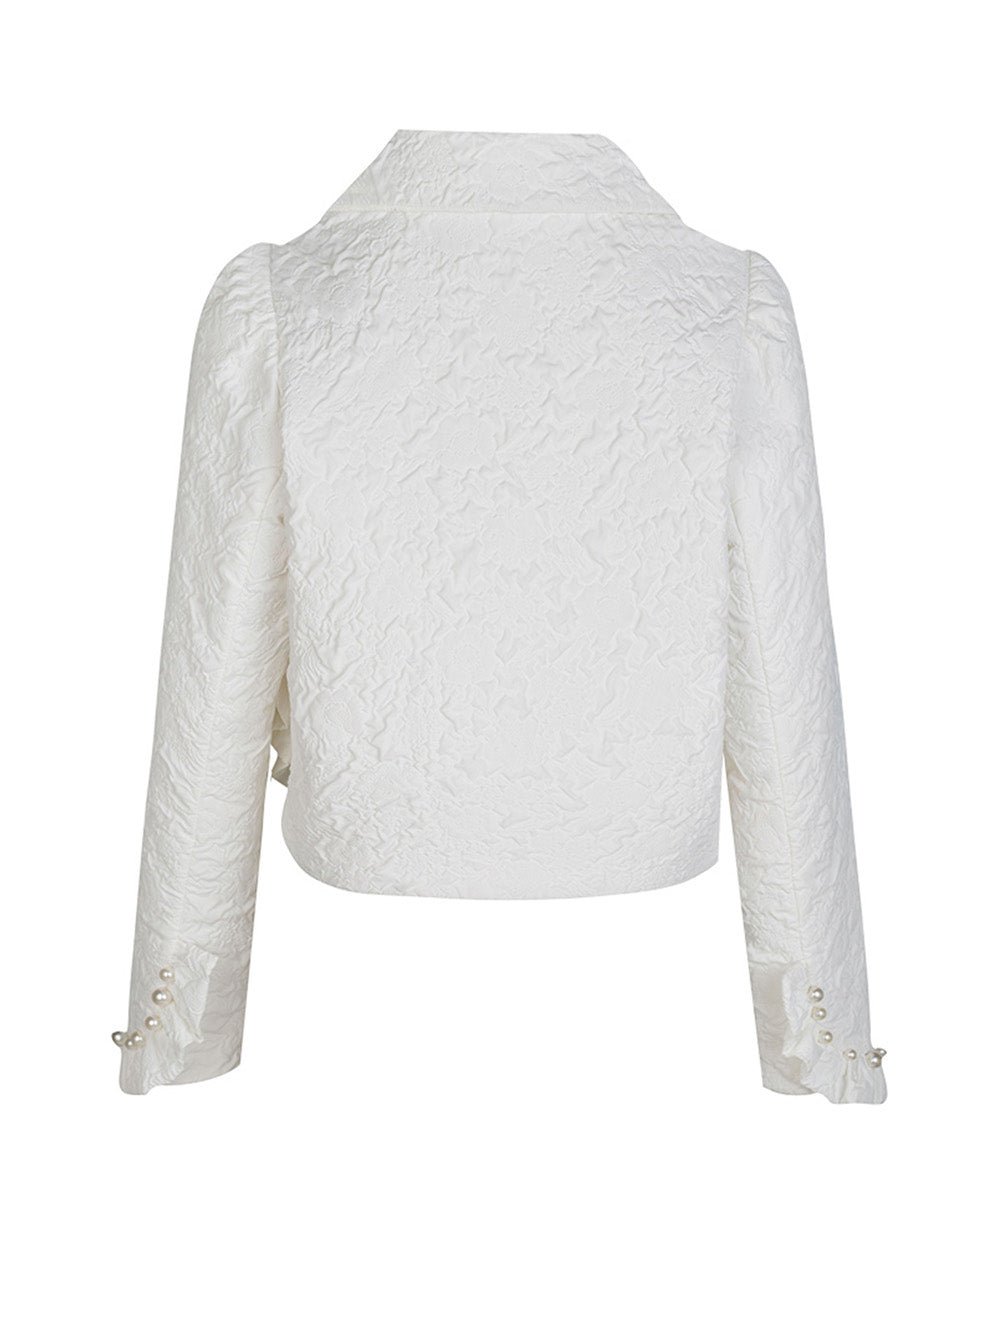 MUKZIN Retro Jacquard Fit Short Coat White